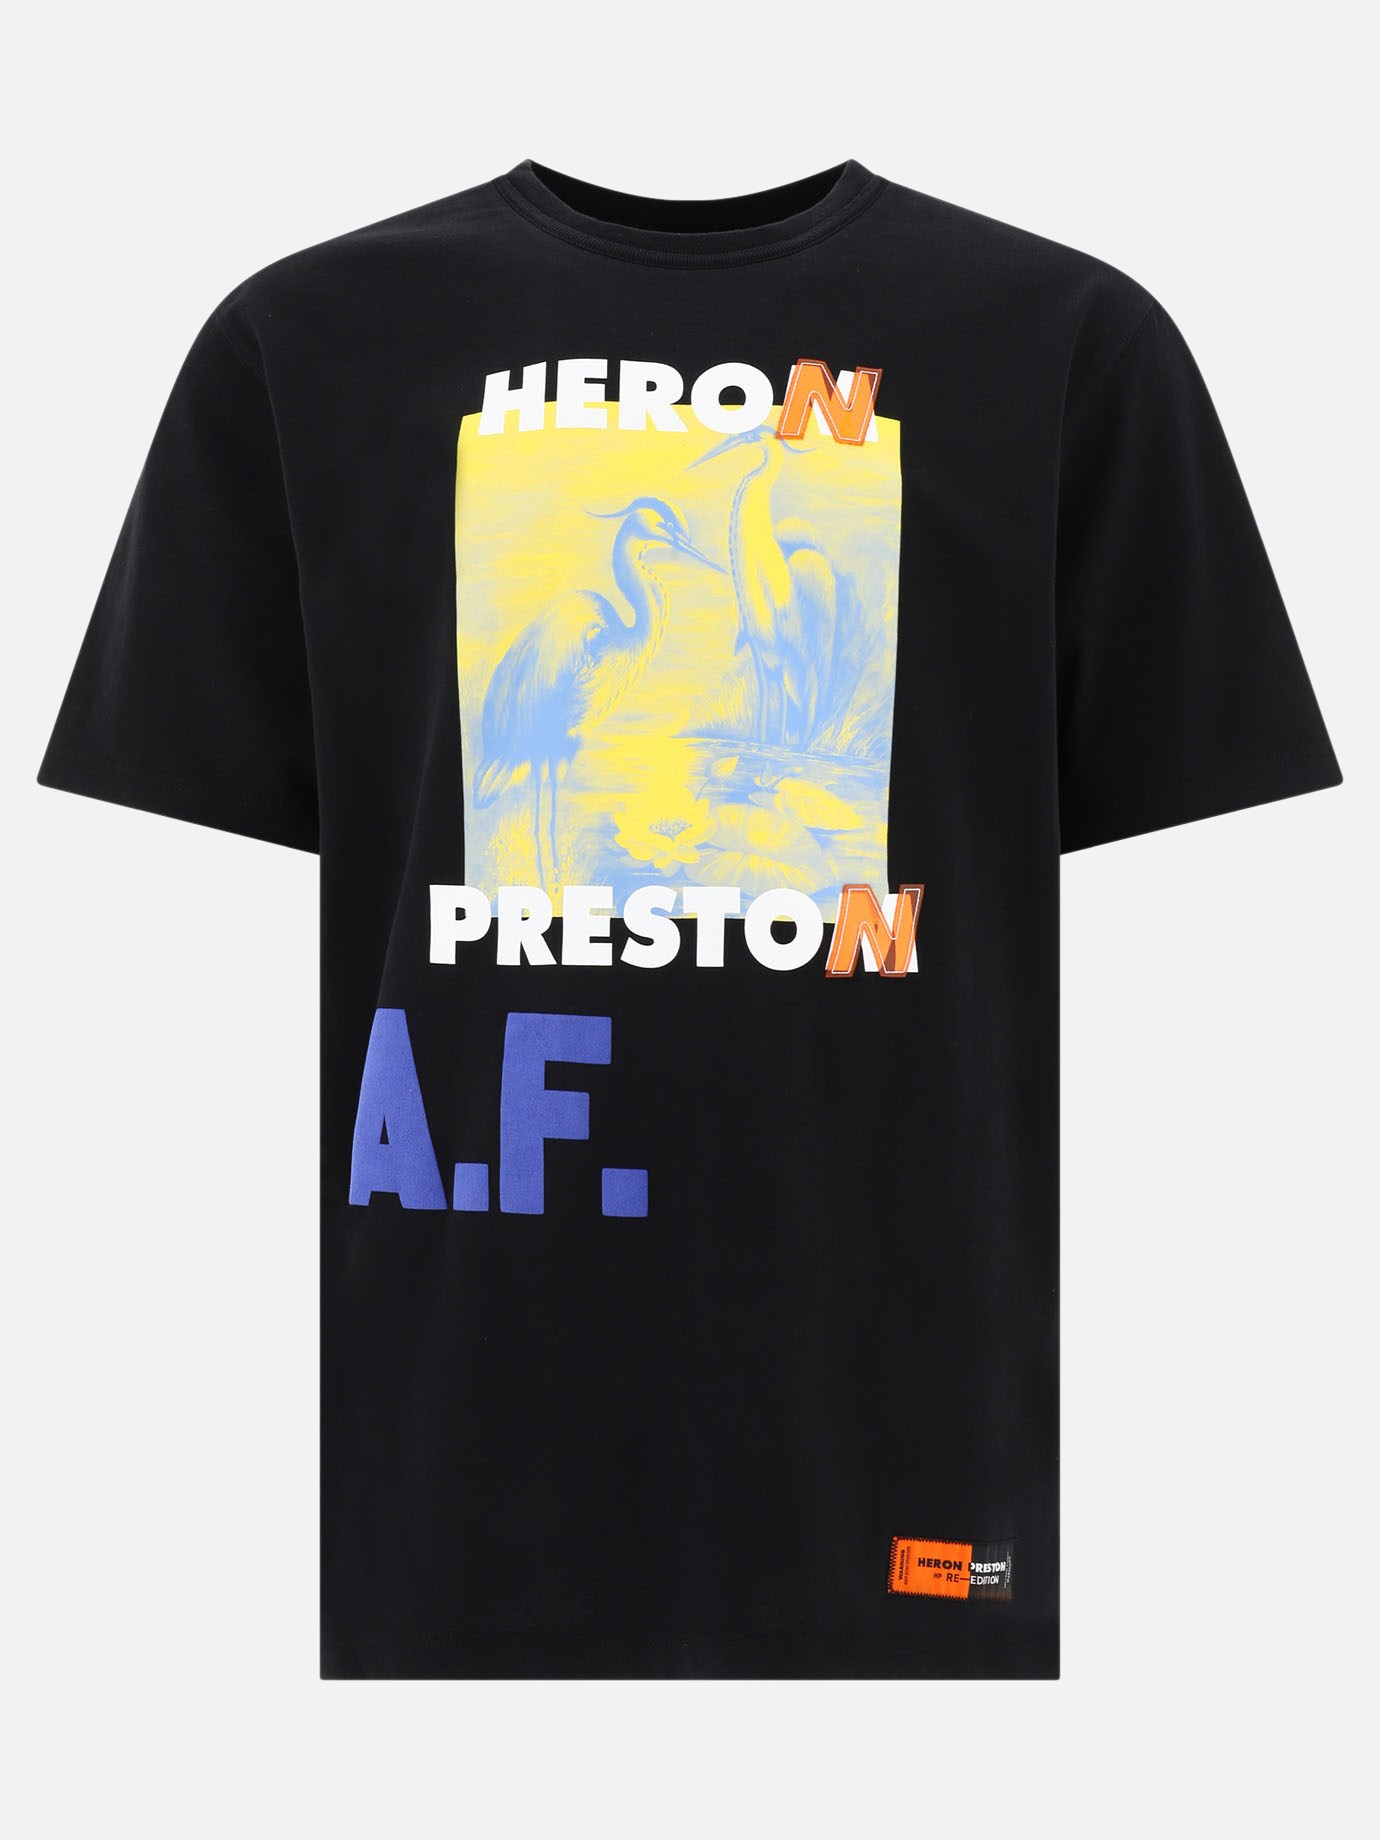  A.F. Authorized  t-shirtby Heron Preston - 5